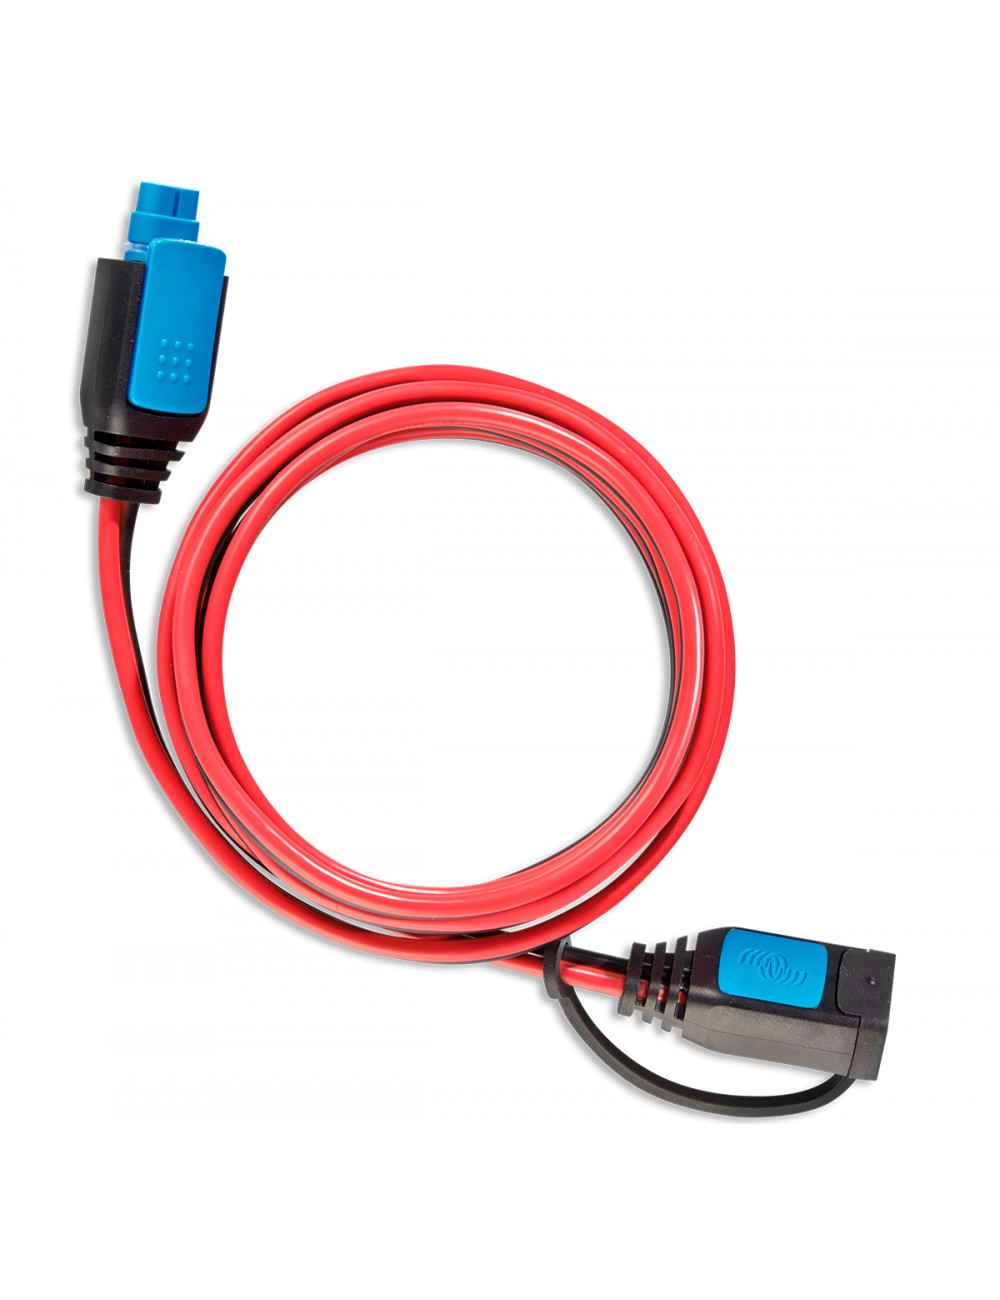 Cable alargadera de 2m con conector CC para cargadores Blue Smart IP65 de Victron - 1